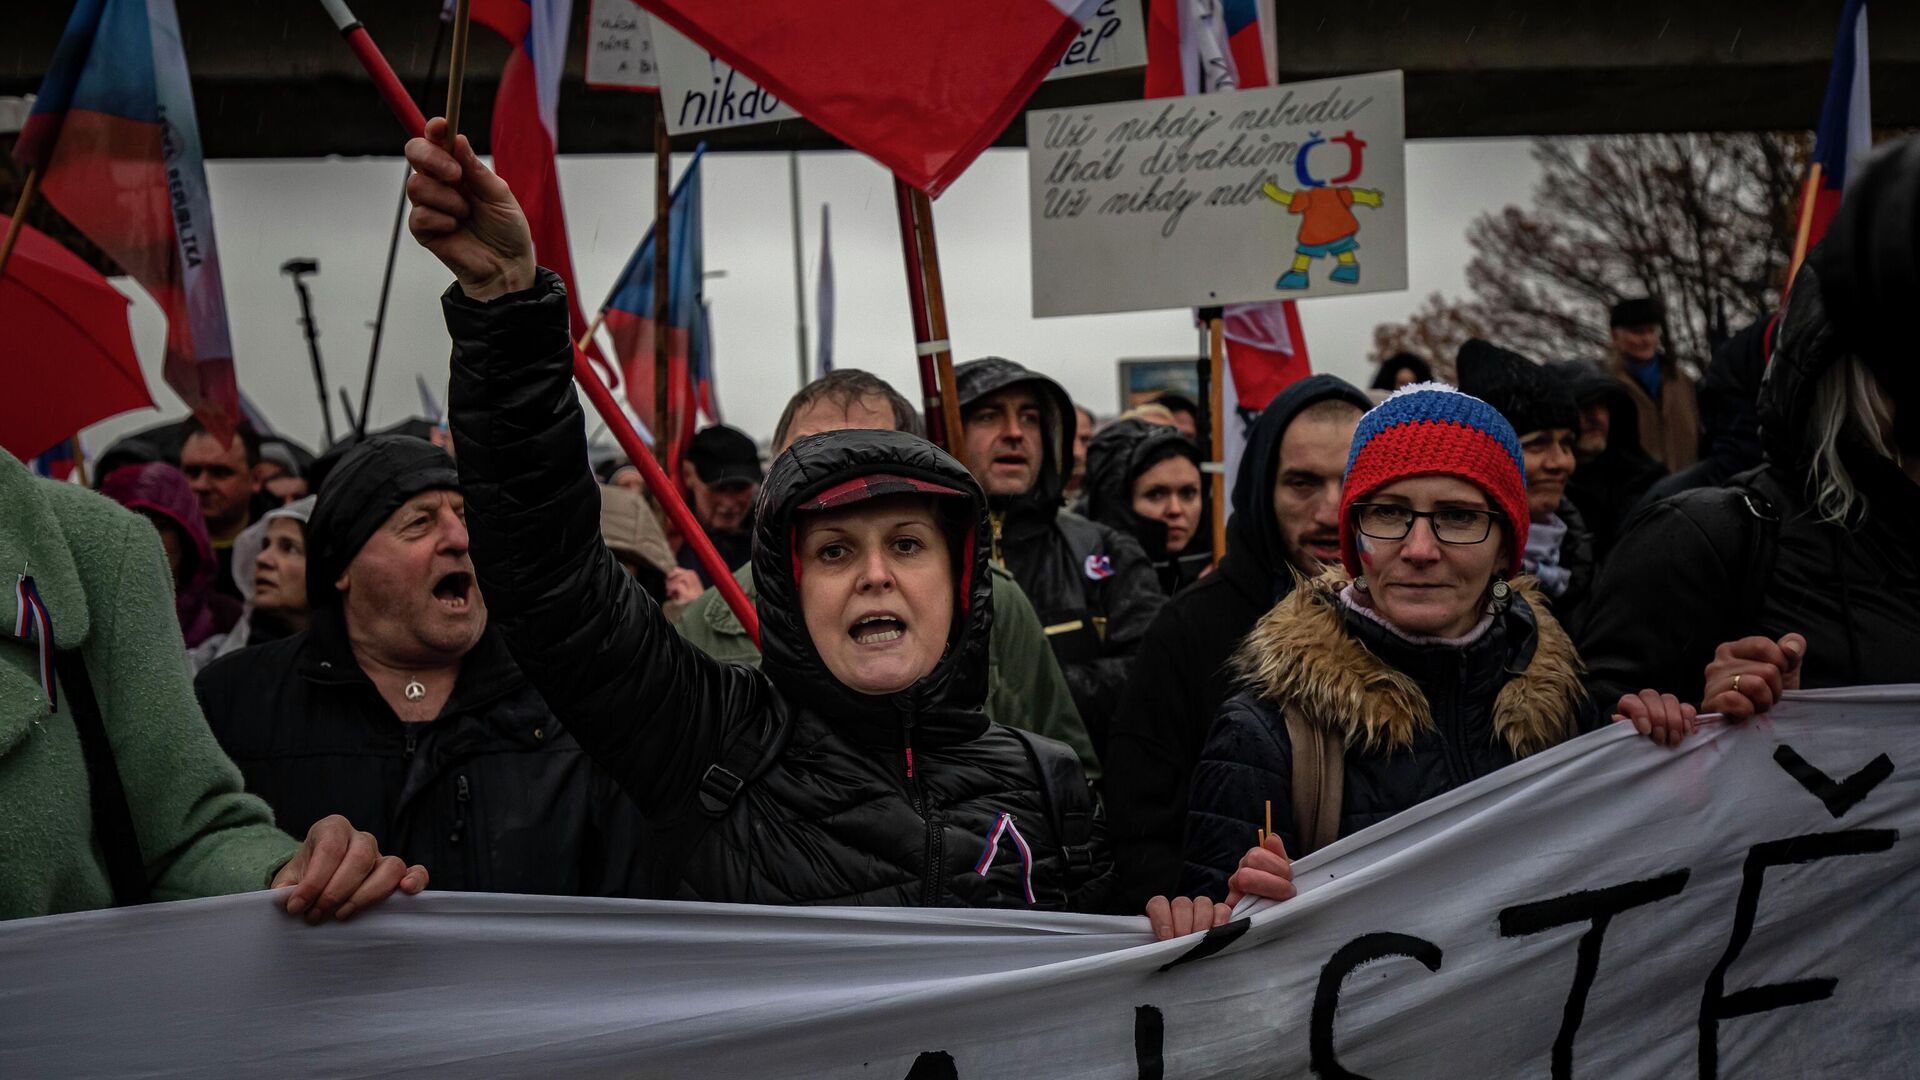 Антиправительственный протест в Праге, Чехия. 17 ноября 2022 года - ИноСМИ, 1920, 12.04.2023